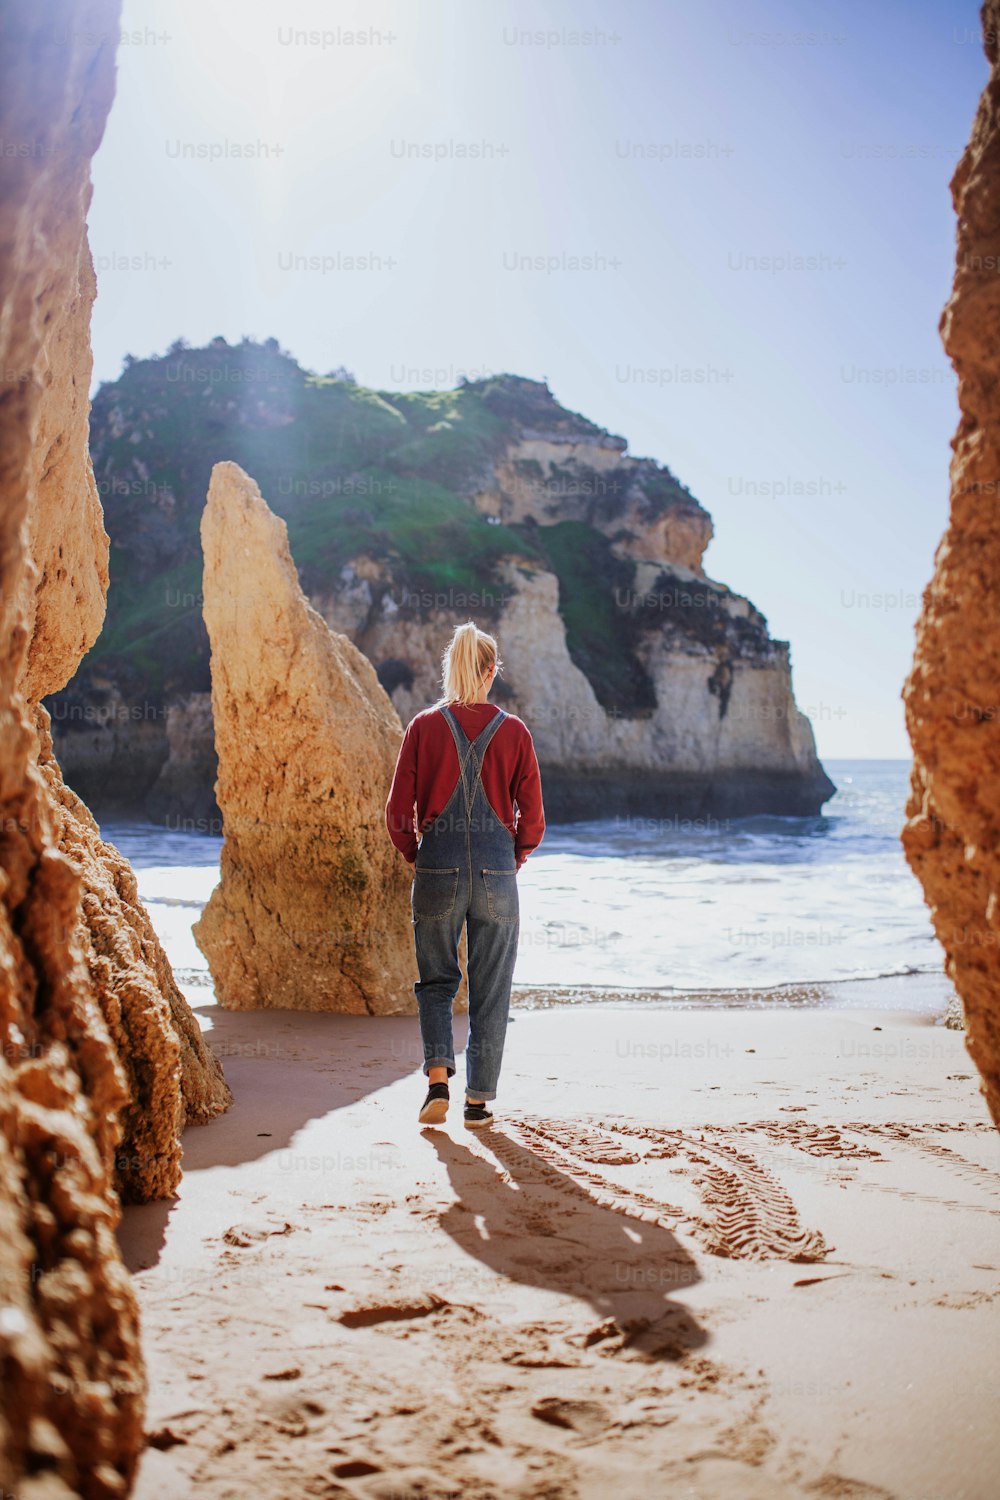 une personne marchant sur une plage près de rochers